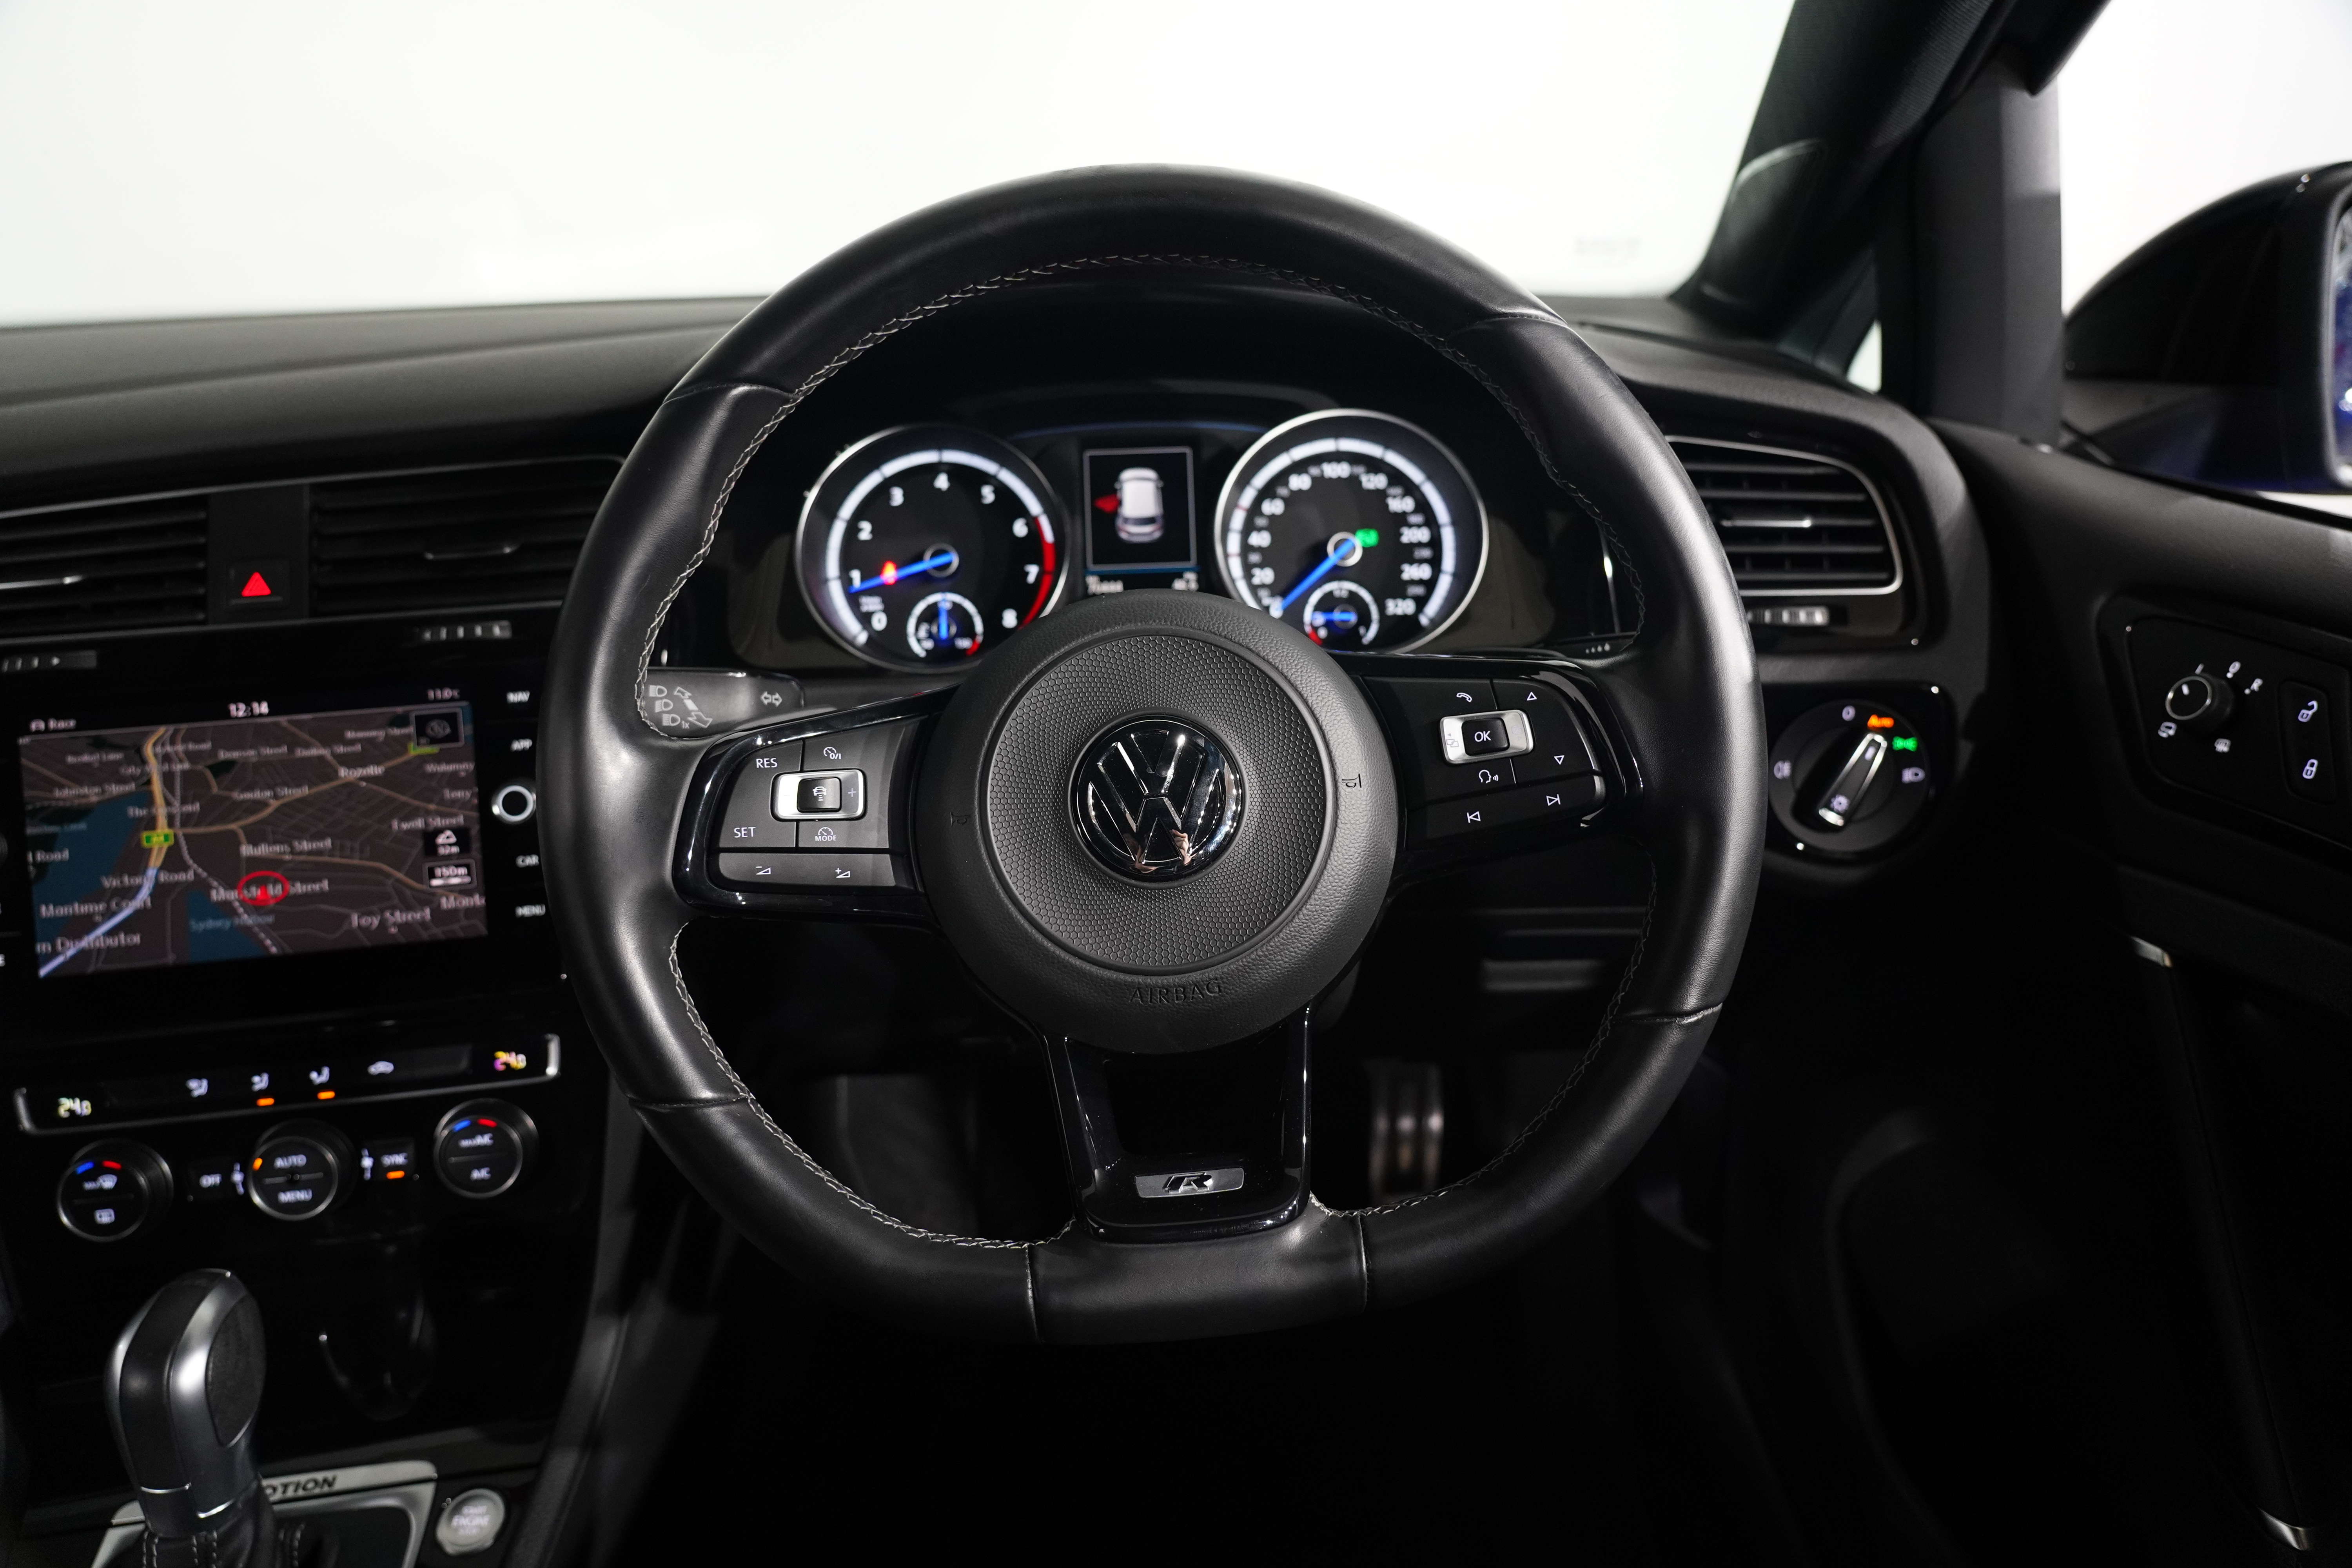 2018 Volkswagen Golf Volkswagen Golf R Grid Edition 7 Sp Auto Direct Shift R Grid Edition Hatch Image 15